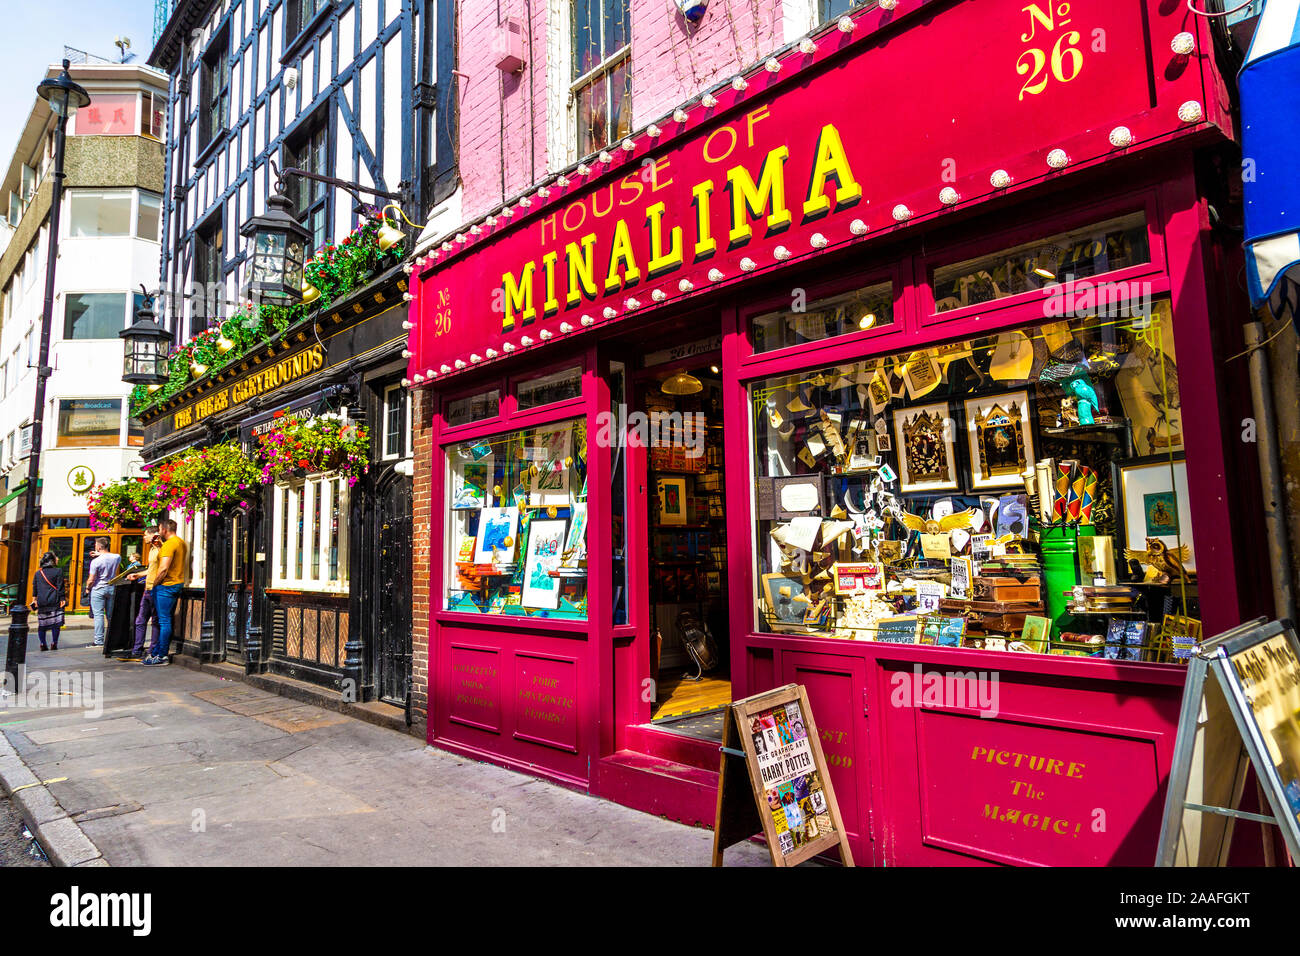 Minalima Shop, Soho, London, UK Stockfoto